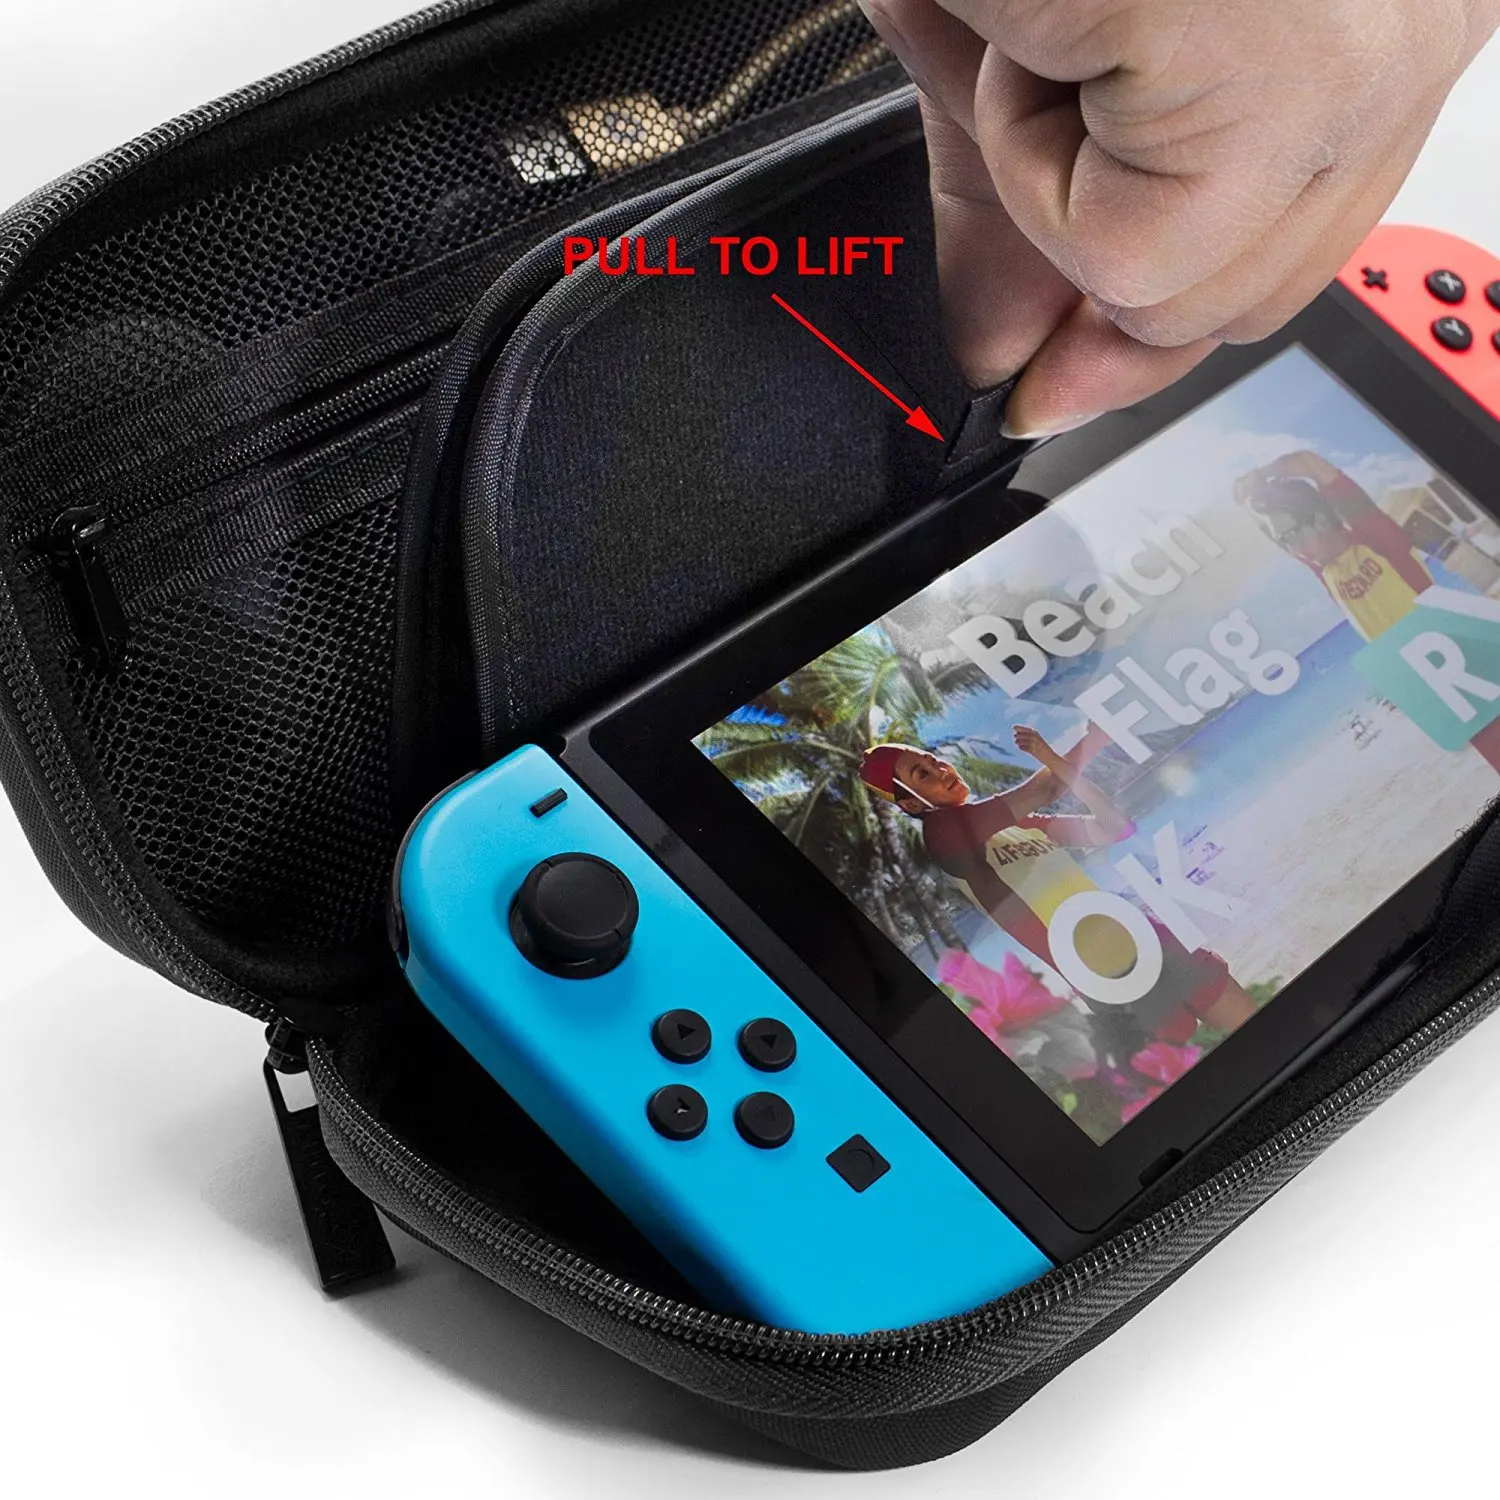 Nintendo Switch Mainframe игровая сумка с четырьмя углами багажная сумка Защитная сумка Eva большая емкость сумка для переноски